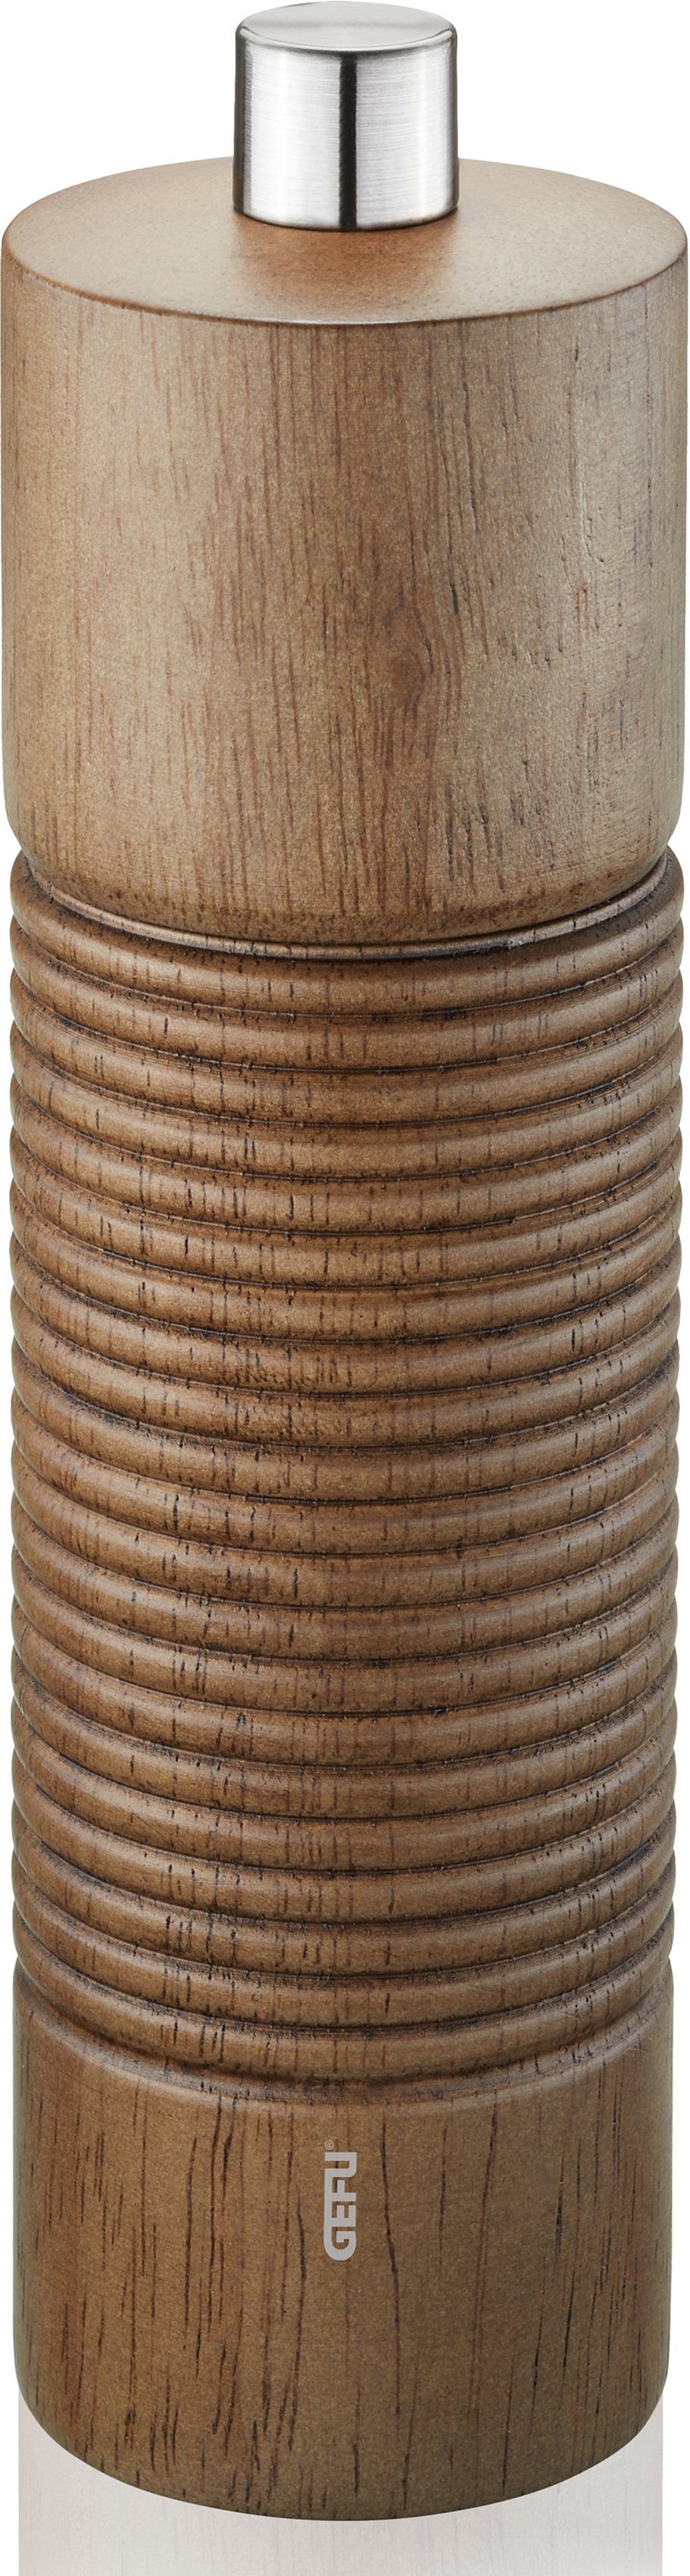 GEFU Salz-/Pfeffermühle TEDORO manuell, stufenlos einstellbares Keramikmahlwerk